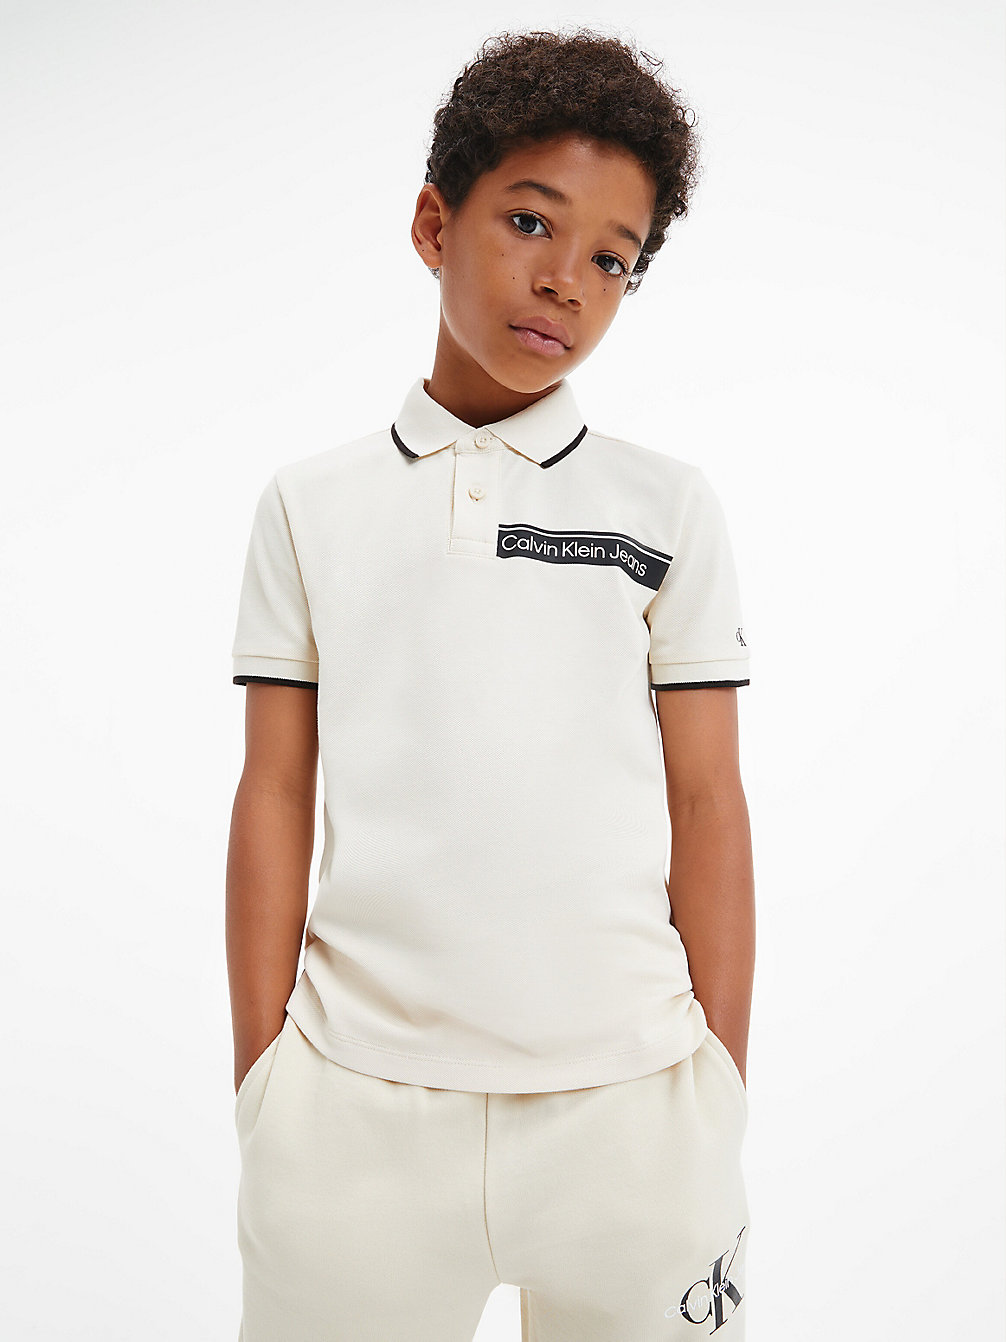 MUSLIN Poloshirt Mit Logo undefined boys Calvin Klein